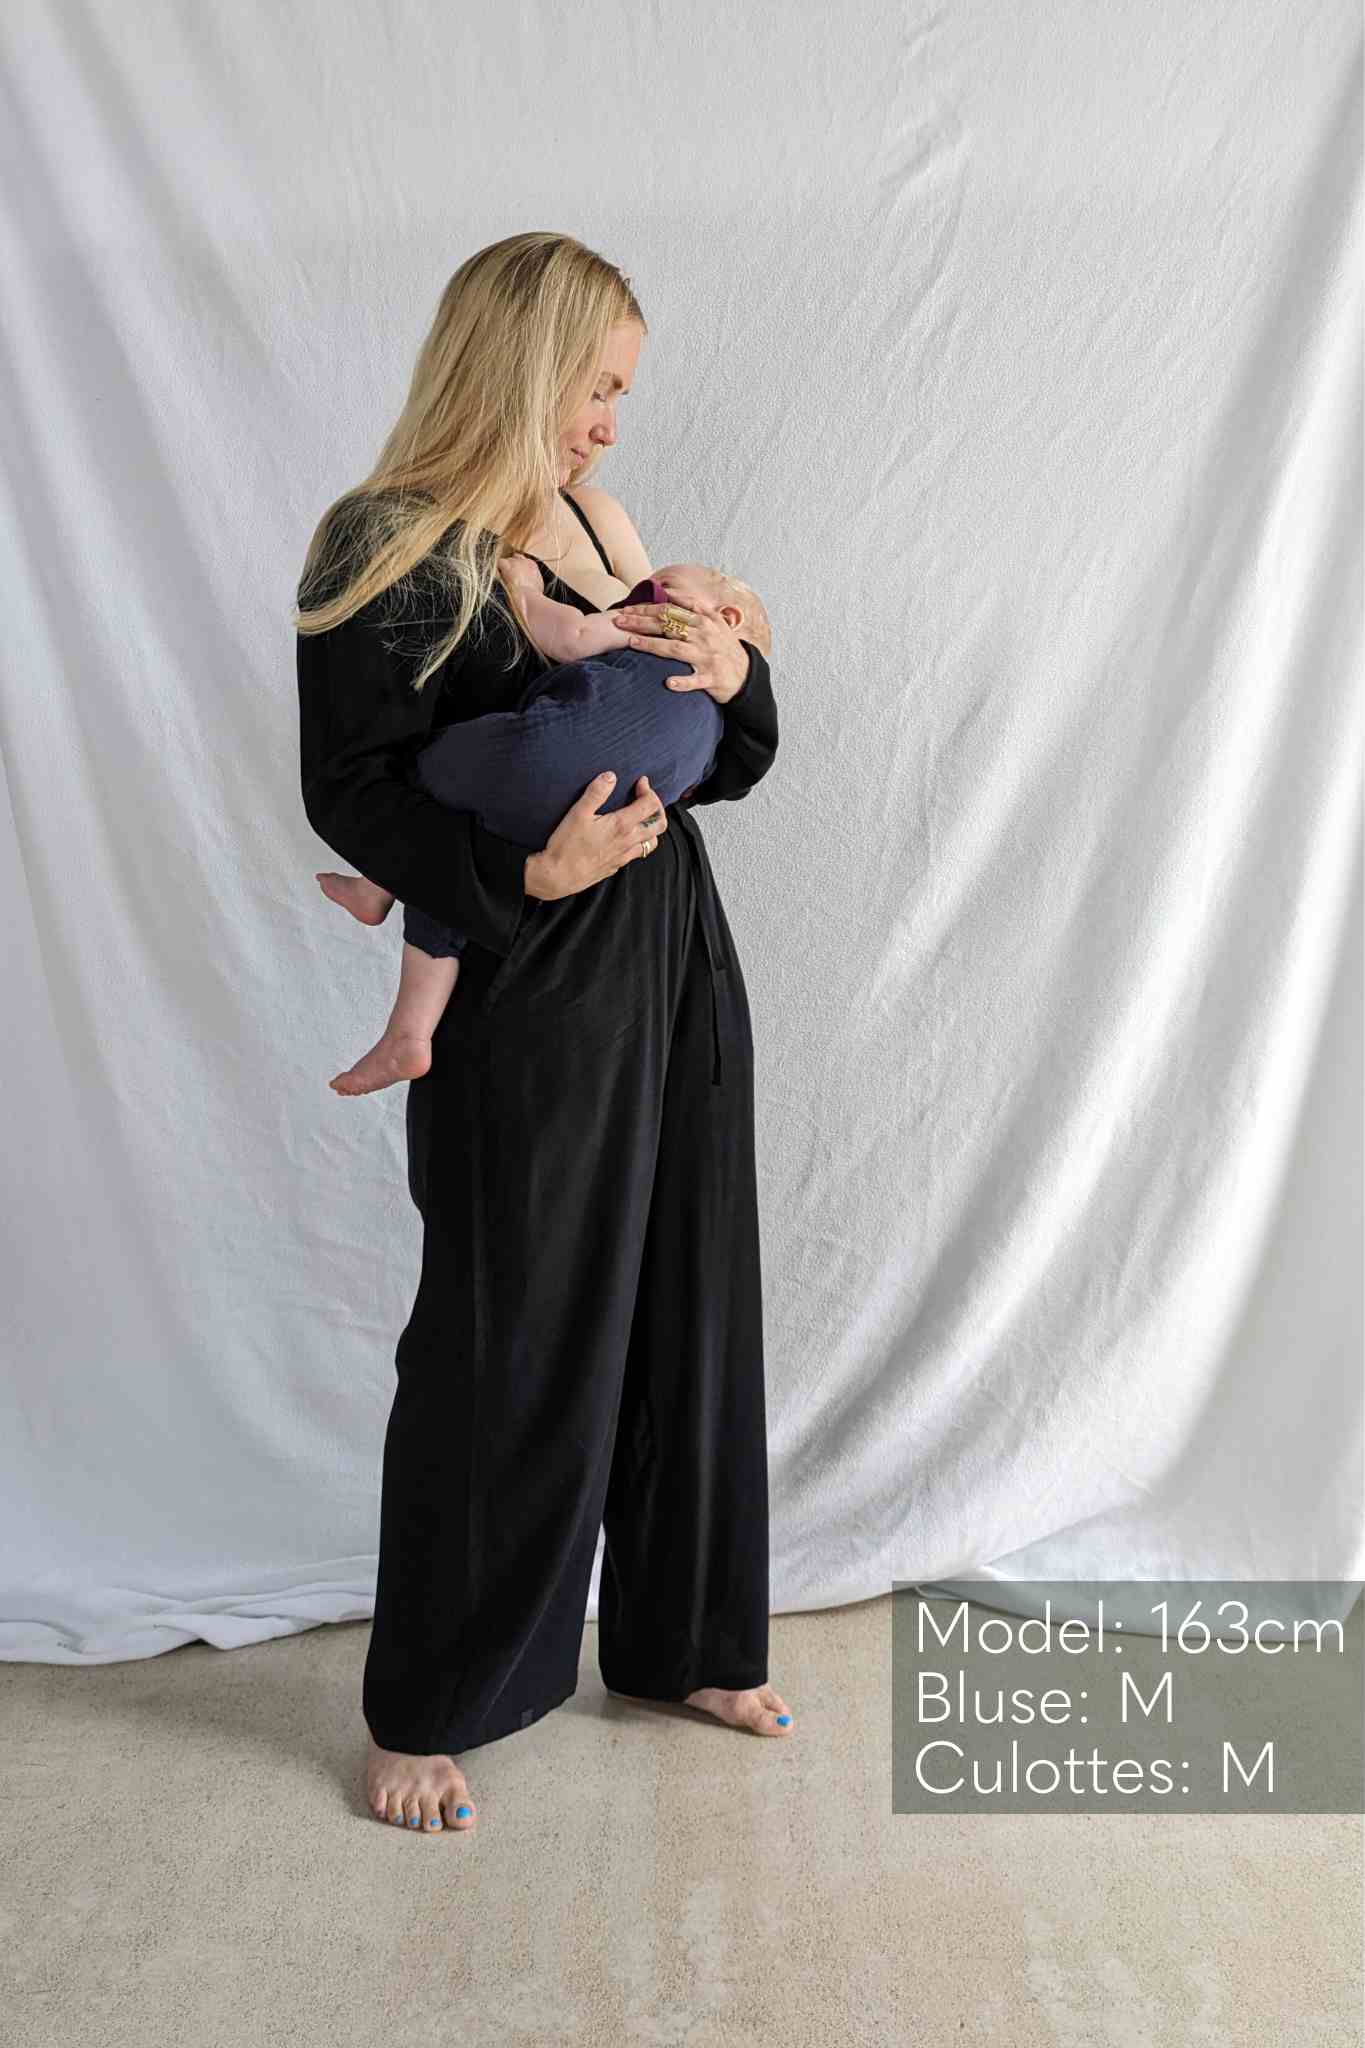 Donna in pantaloni e camicetta nera porta in braccio un bambino.